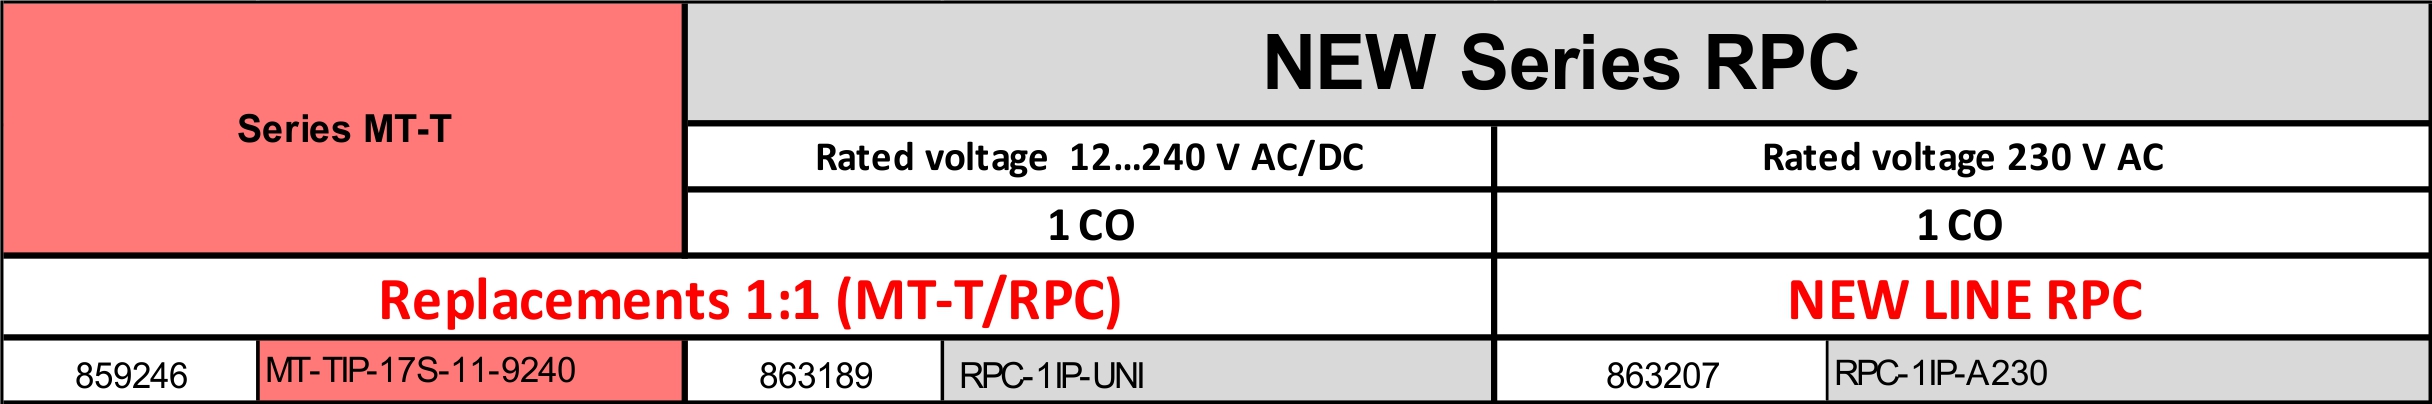 eRPC-IP